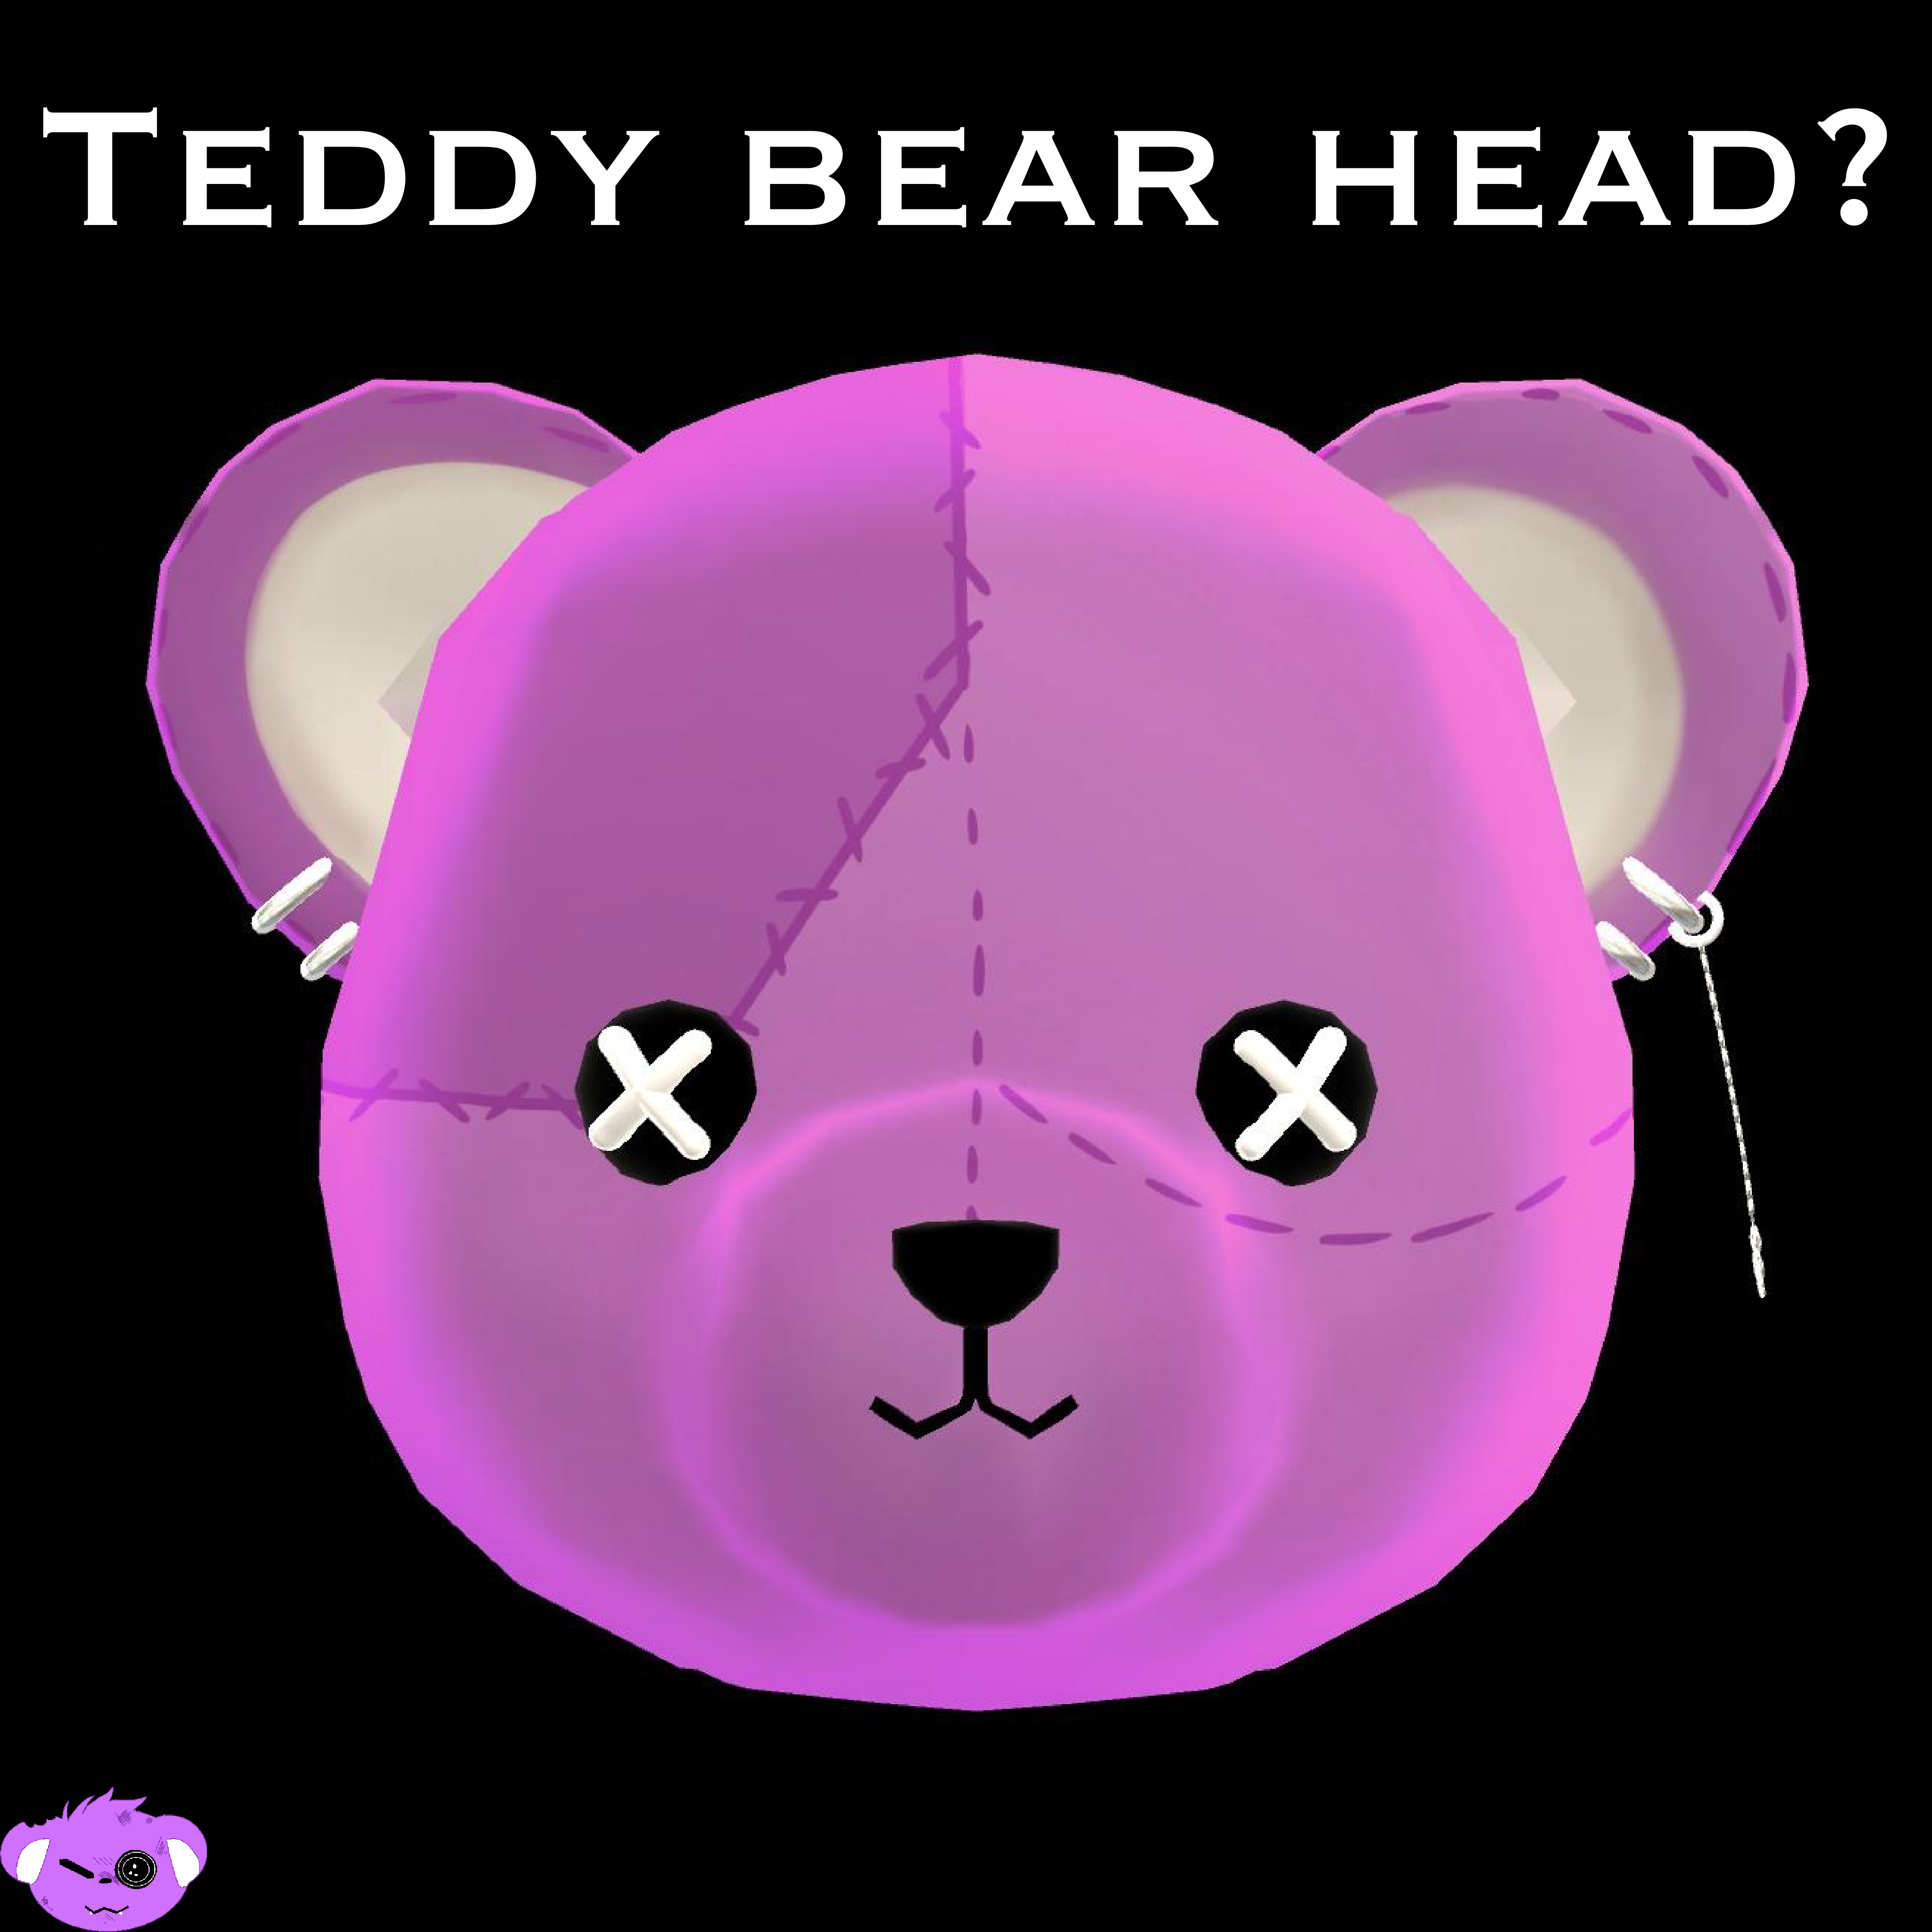 TeddyBear Head